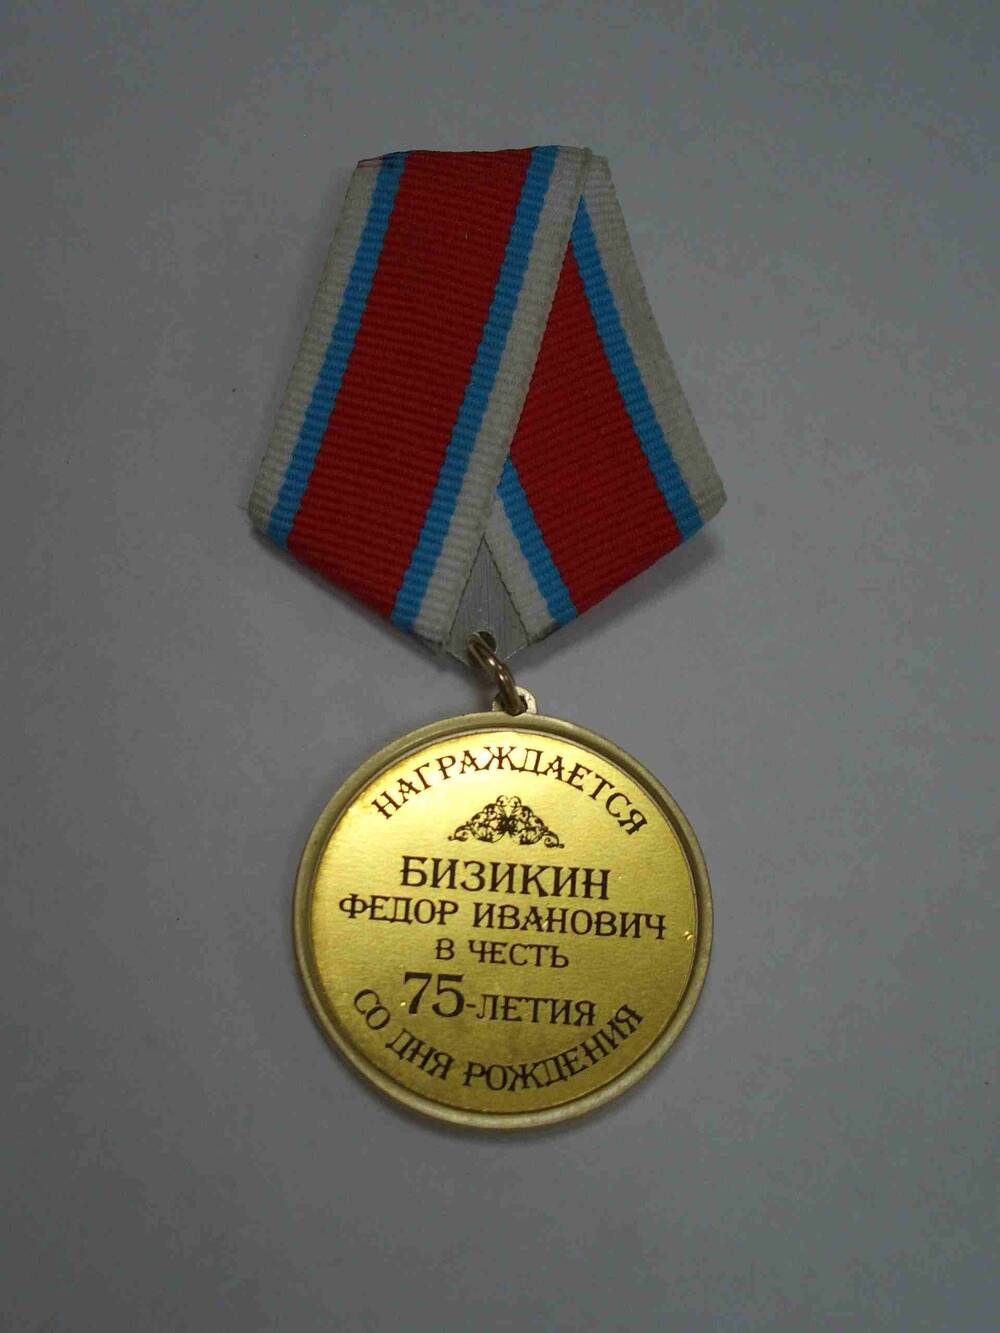 Медаль Бизикина Ф.И. в честь 75-летия со дня рождения.